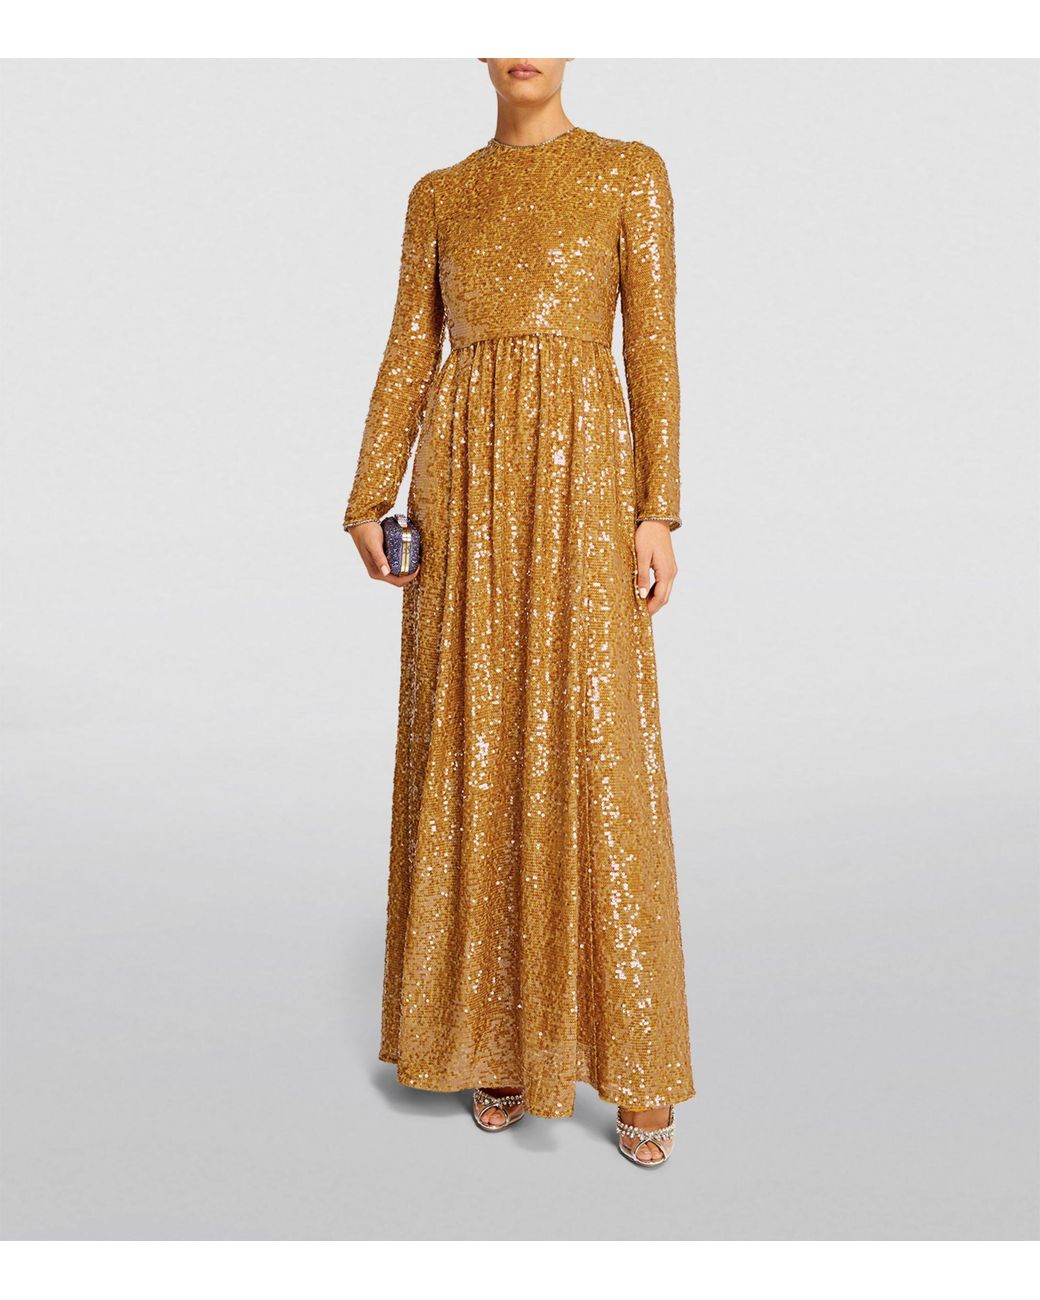 Erdem Sequin-embellished Gown in Metallic | Lyst Canada